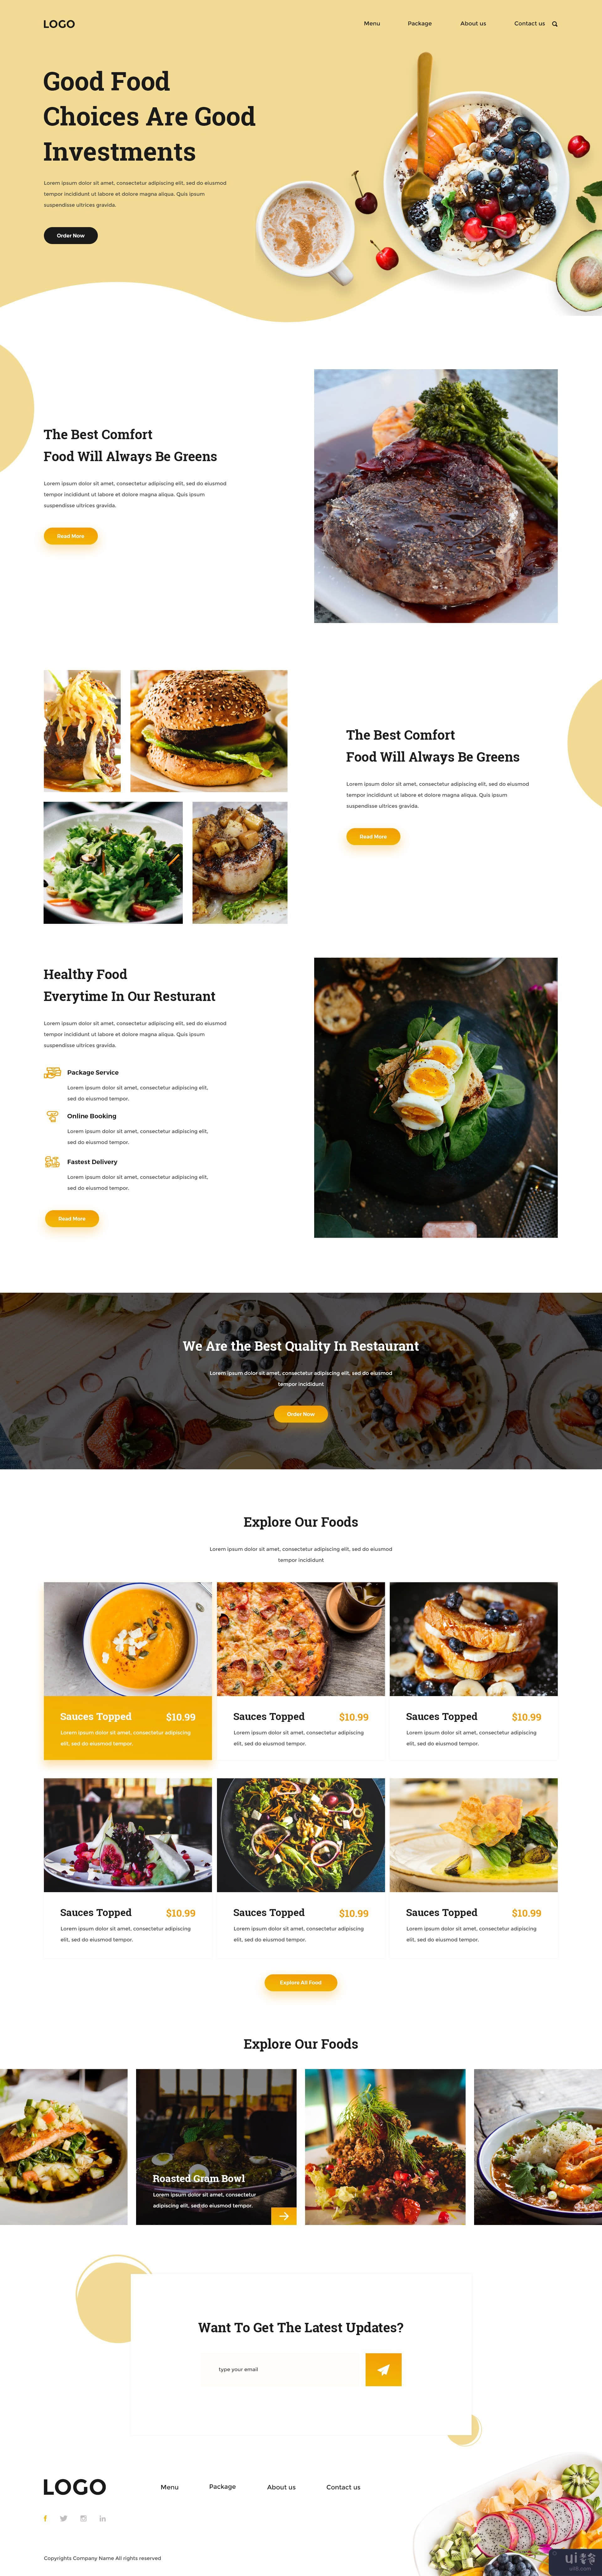 食物网页模板 UI 设计 PSD(Food Web Template UI Design PSD)插图